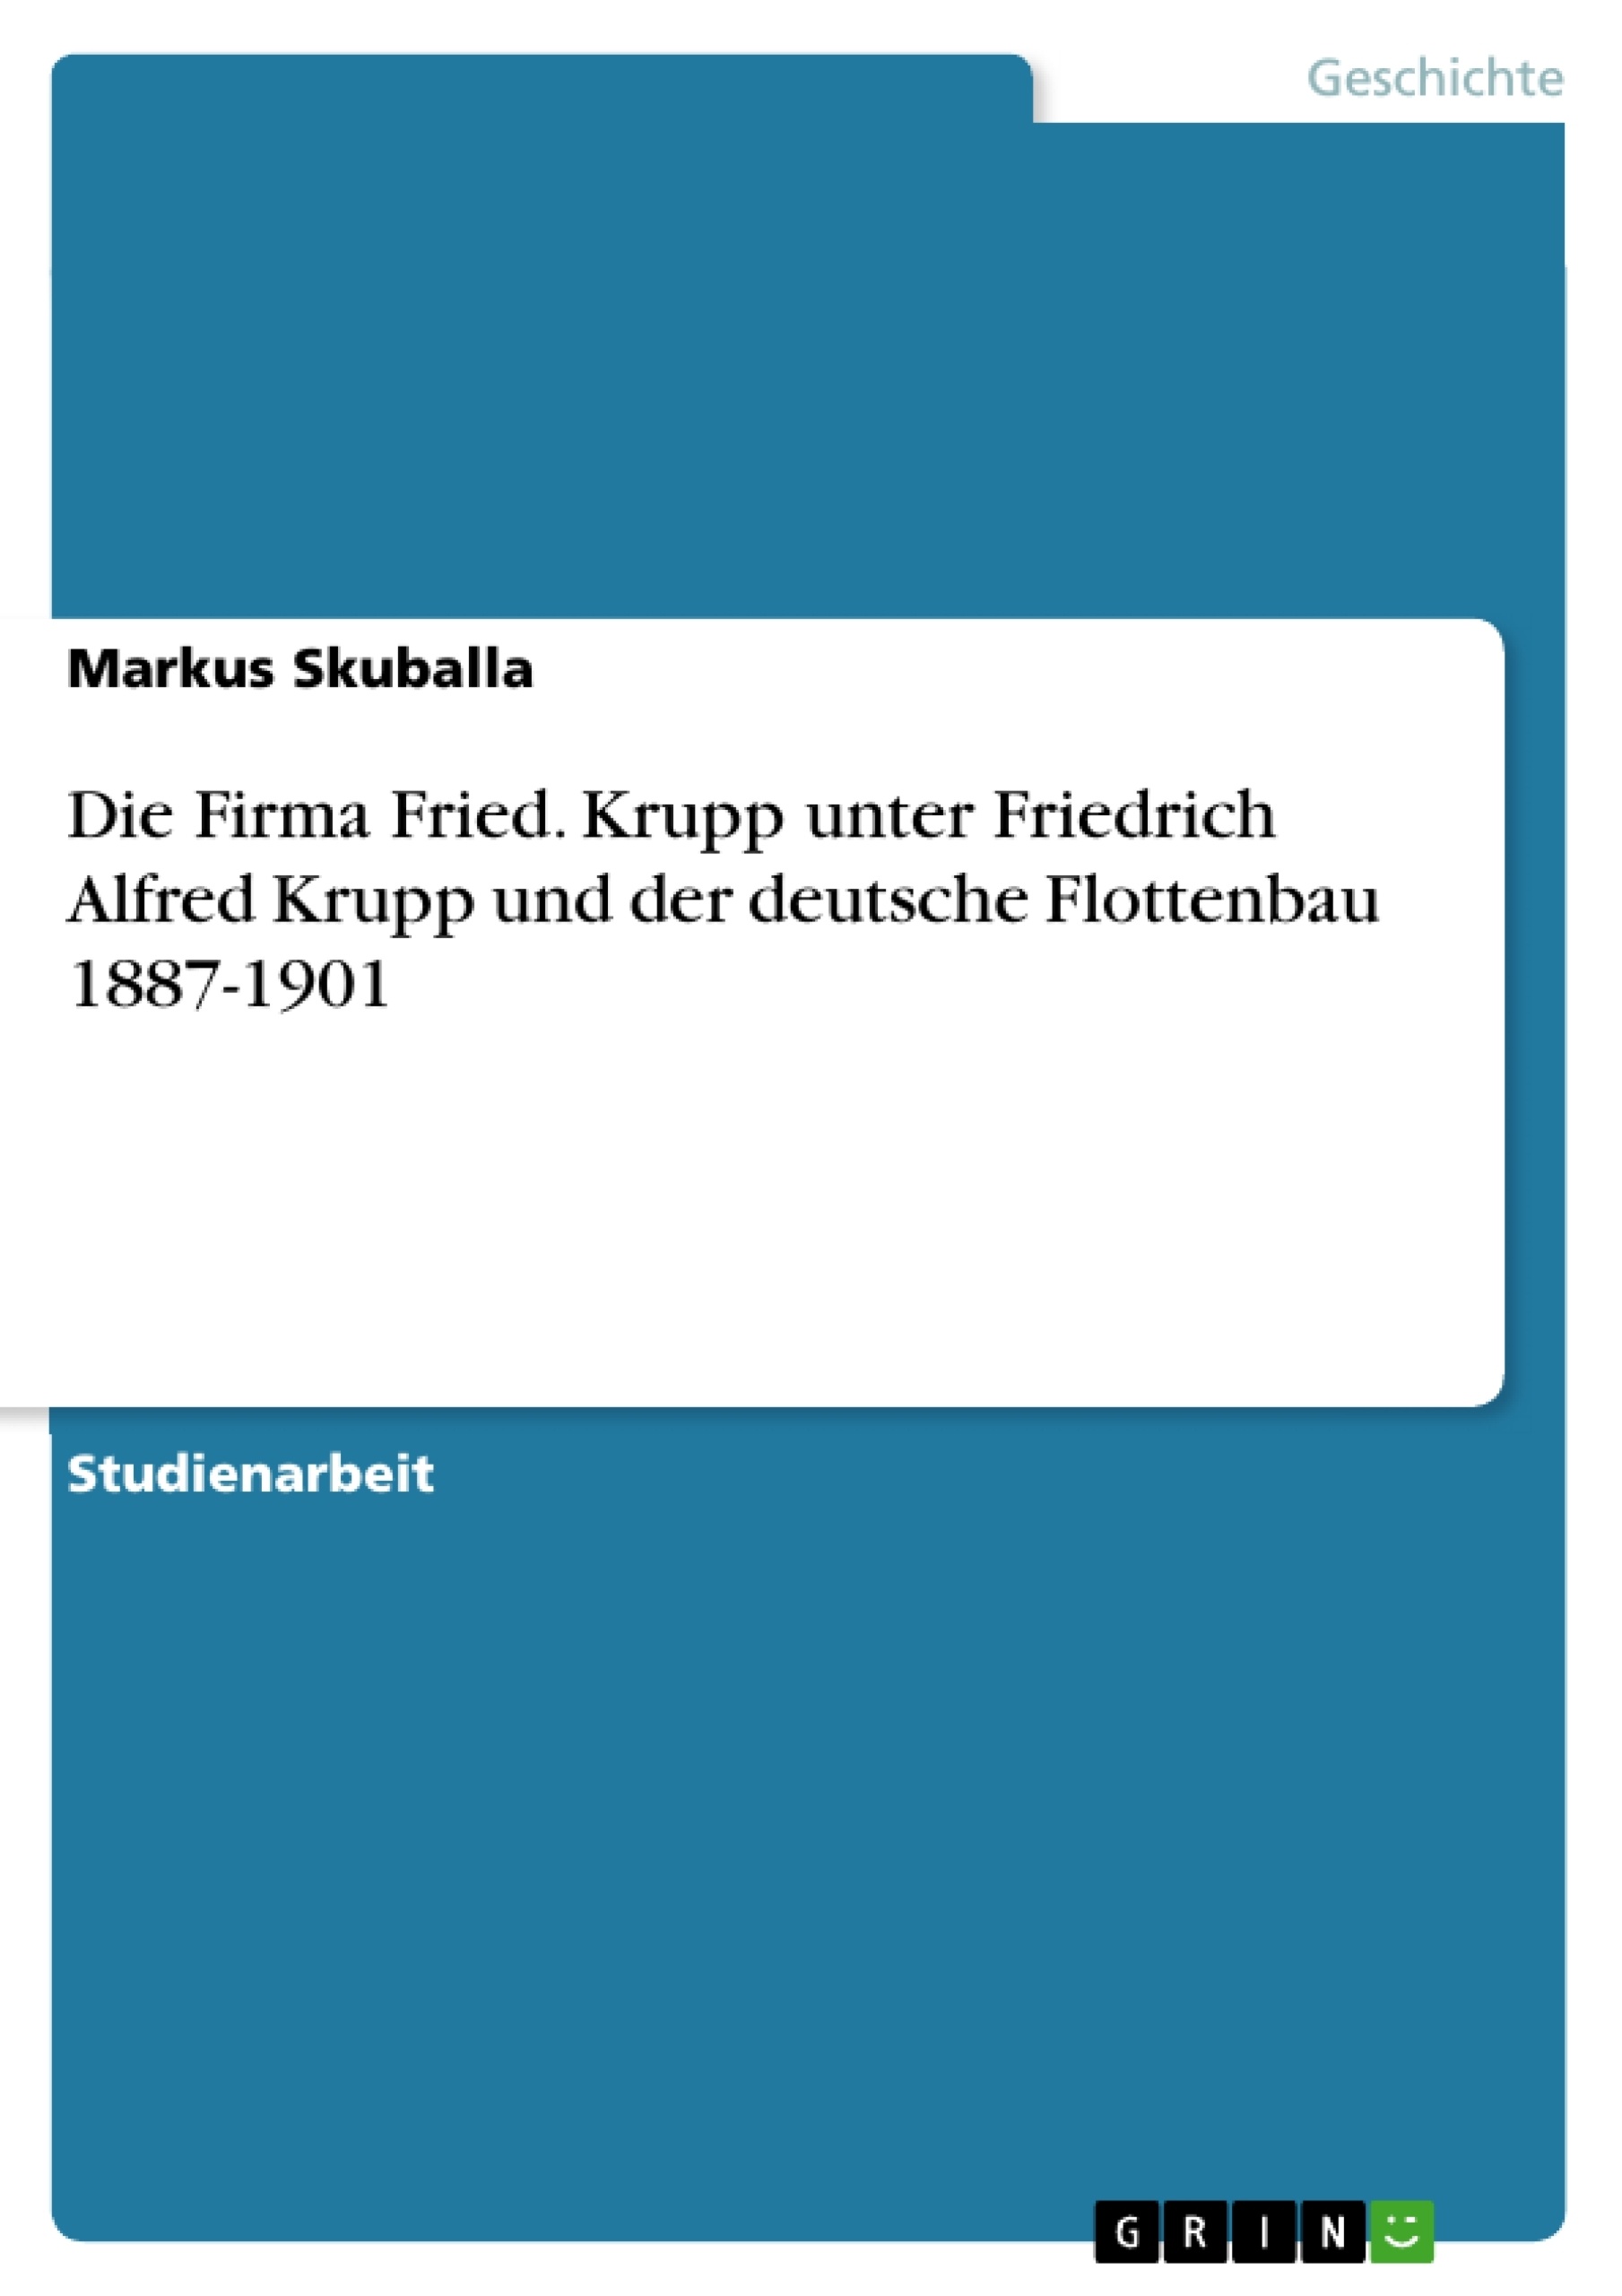 Titel: Die Firma Fried. Krupp unter Friedrich Alfred Krupp und der deutsche Flottenbau 1887-1901